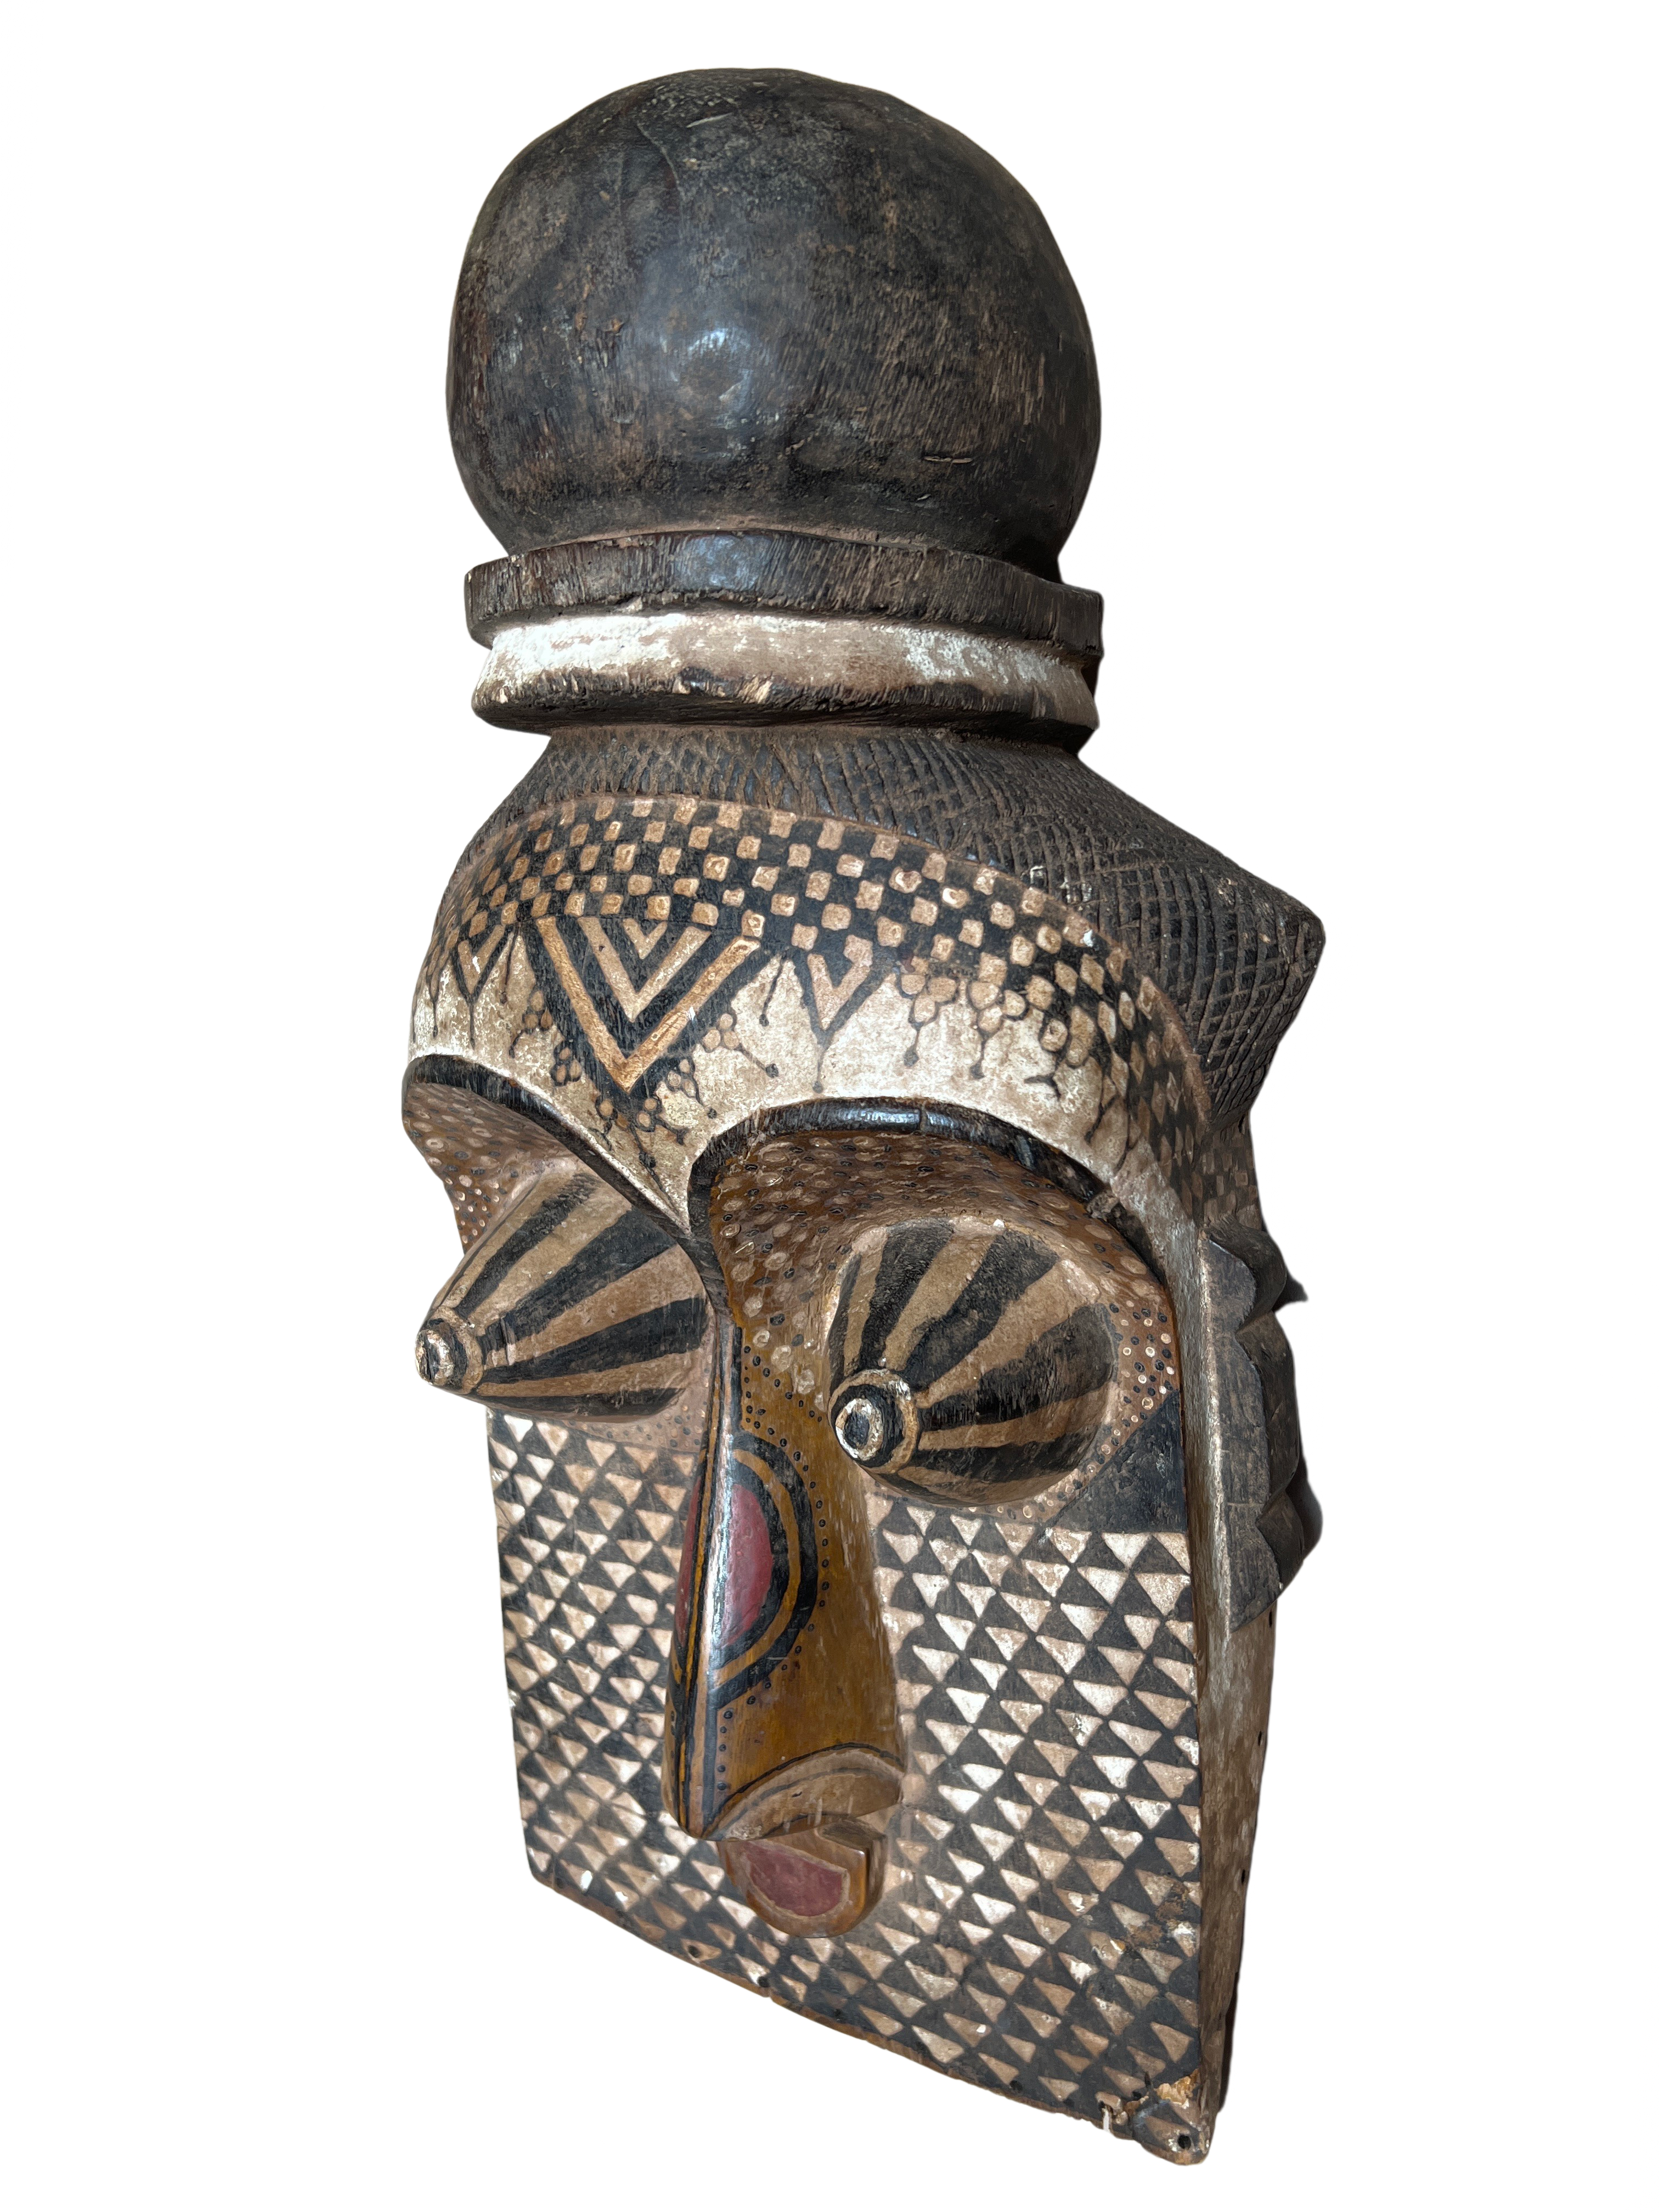 Kuba/Bakuba Tribe Mask - Kuba/Bakuba